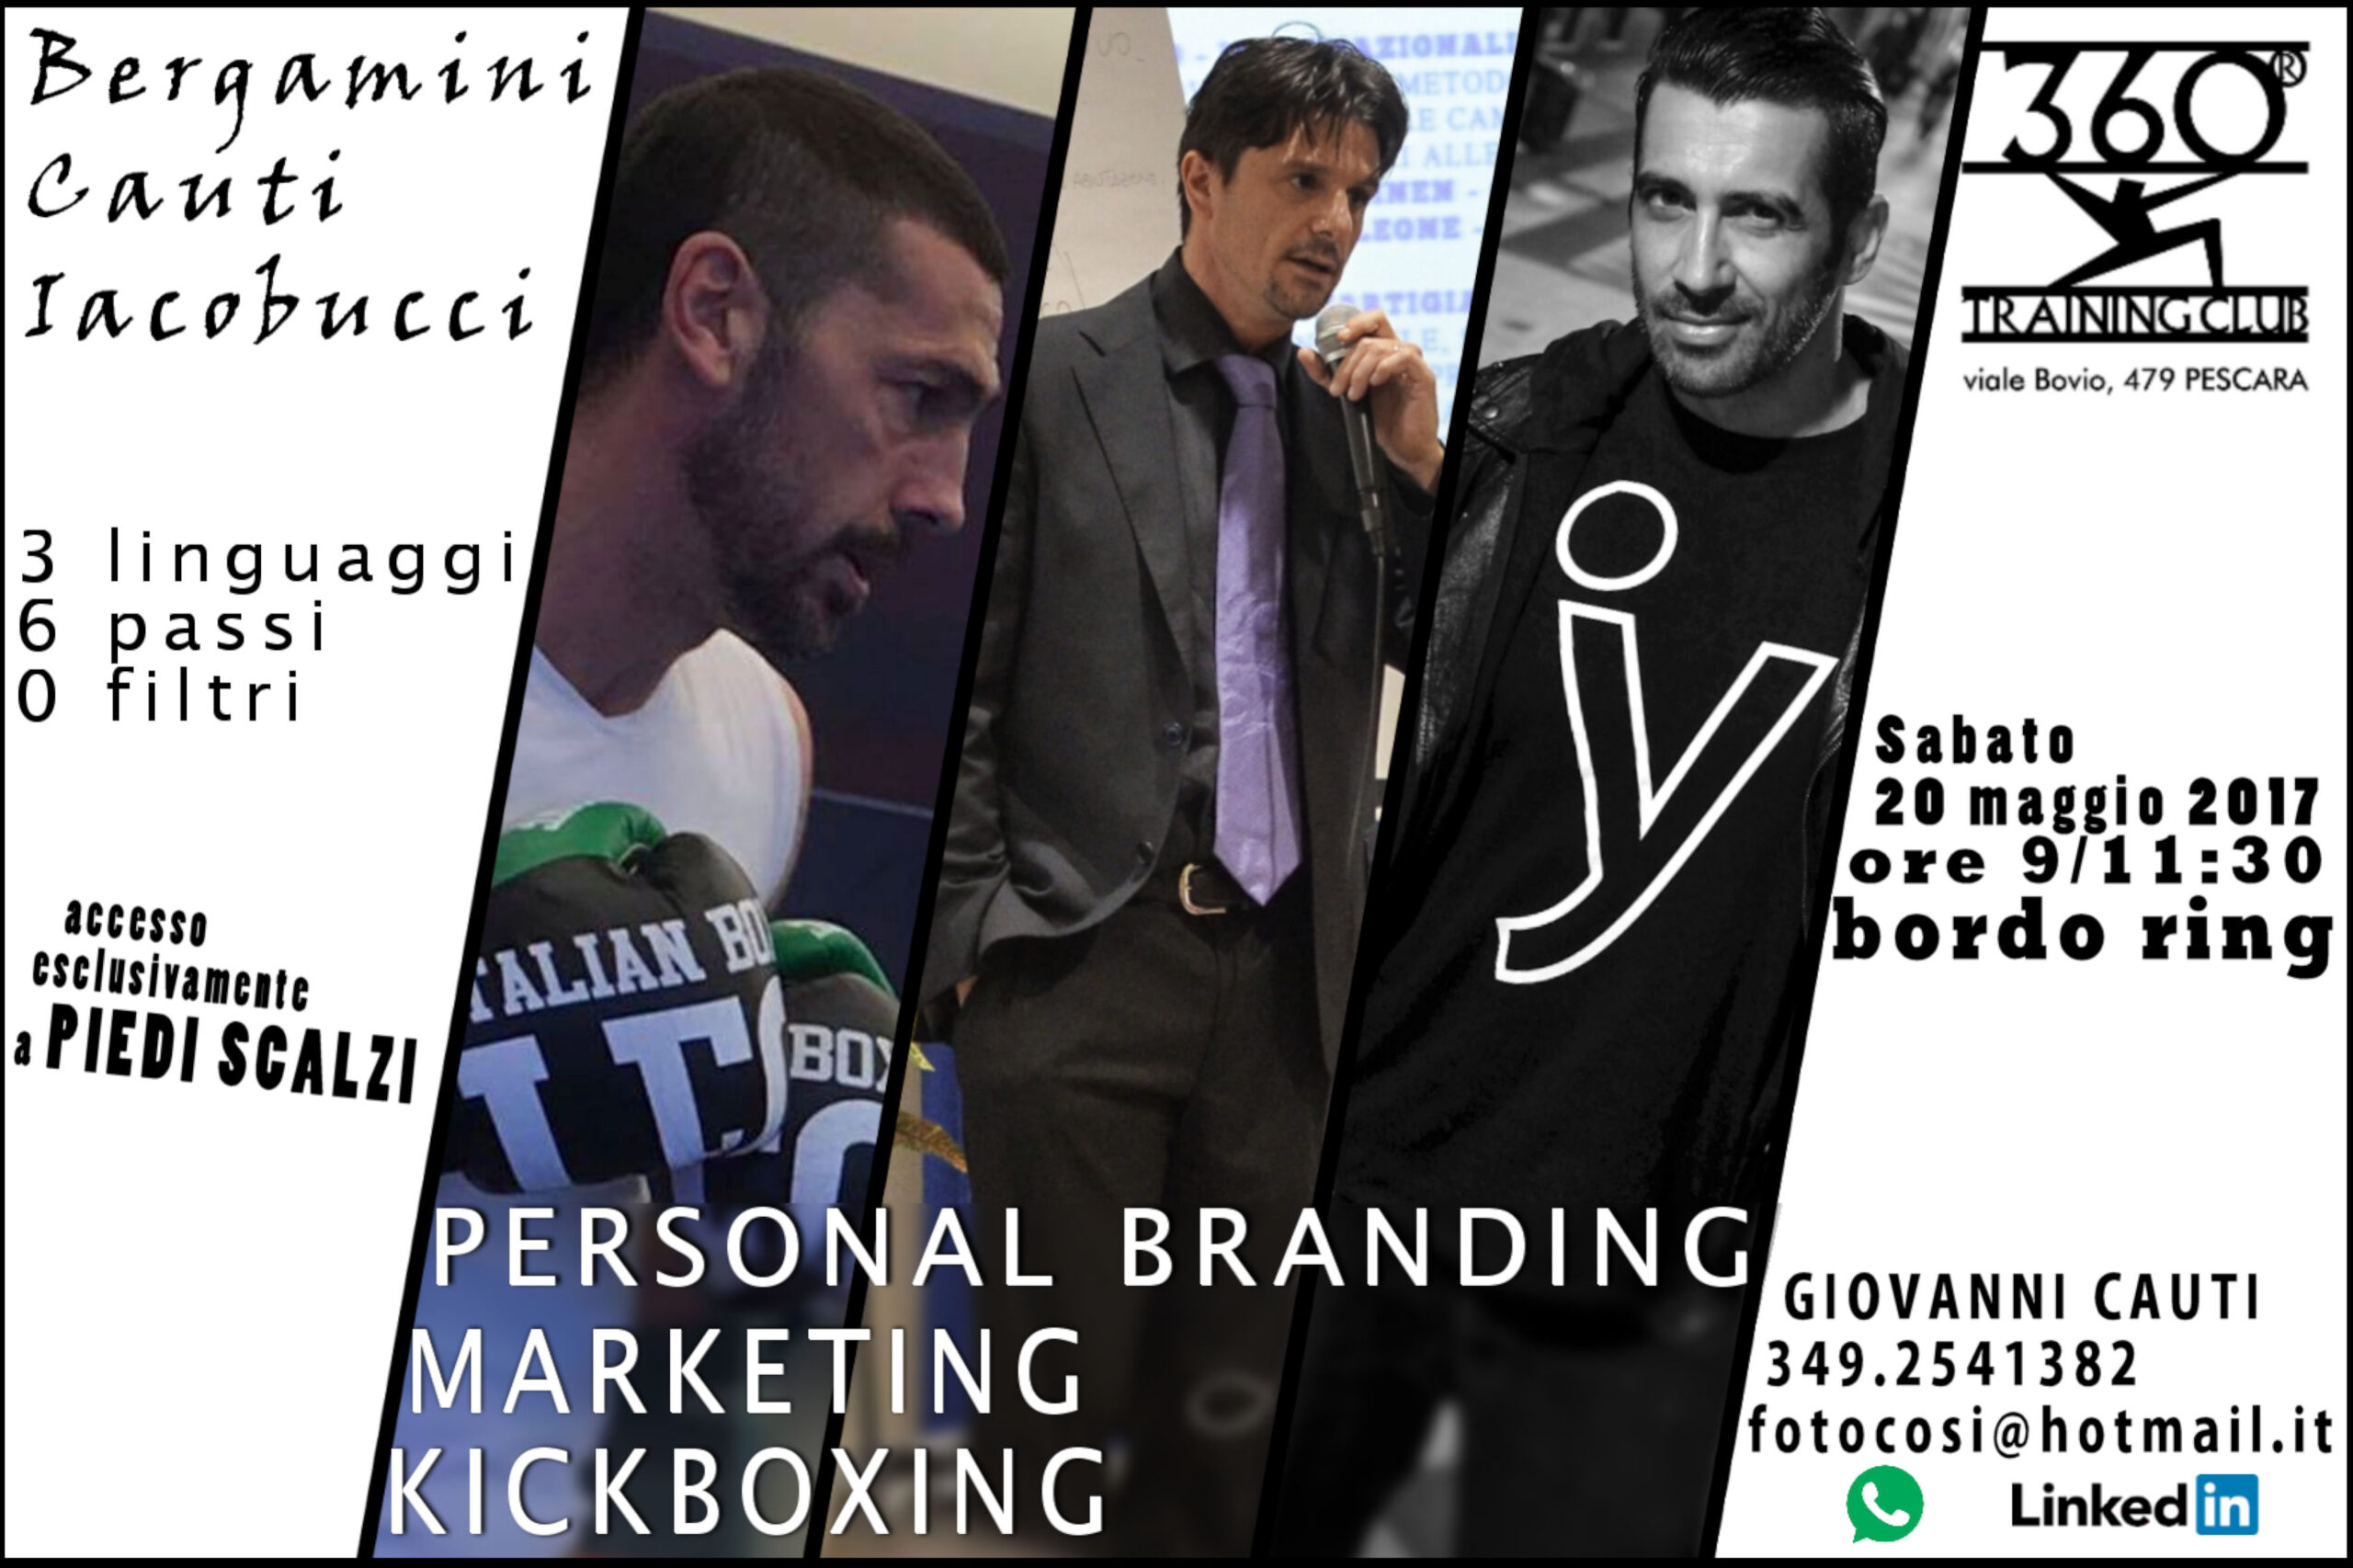 Personal Branding, Marketing e Kickboxing: a Pescara un nuovo evento formativo/esperienziale